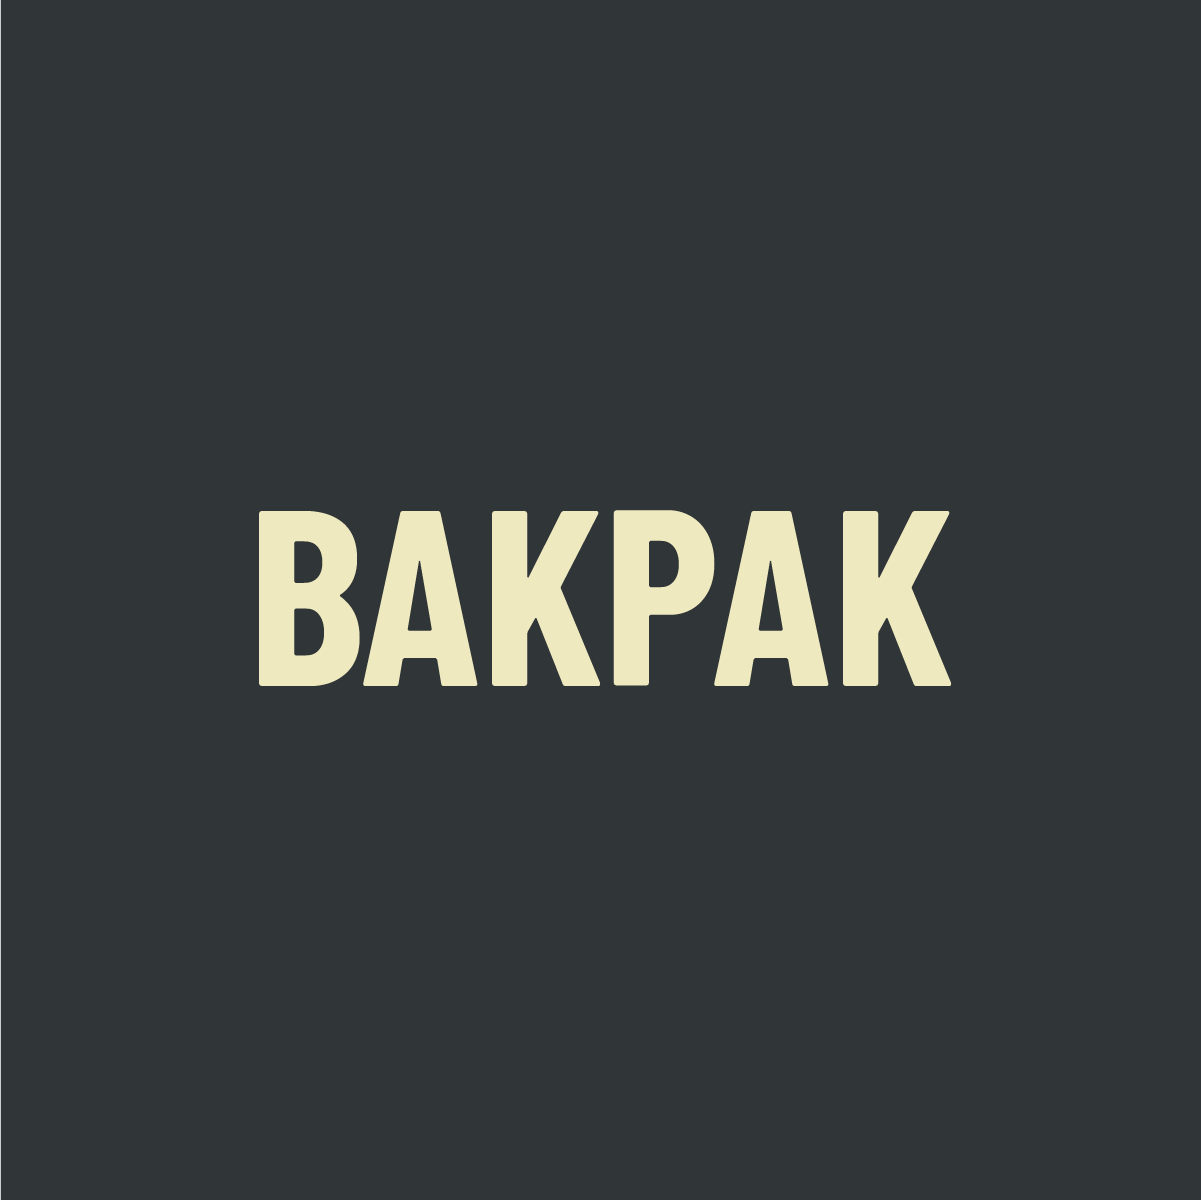 BP_brand_bakpak-active.png